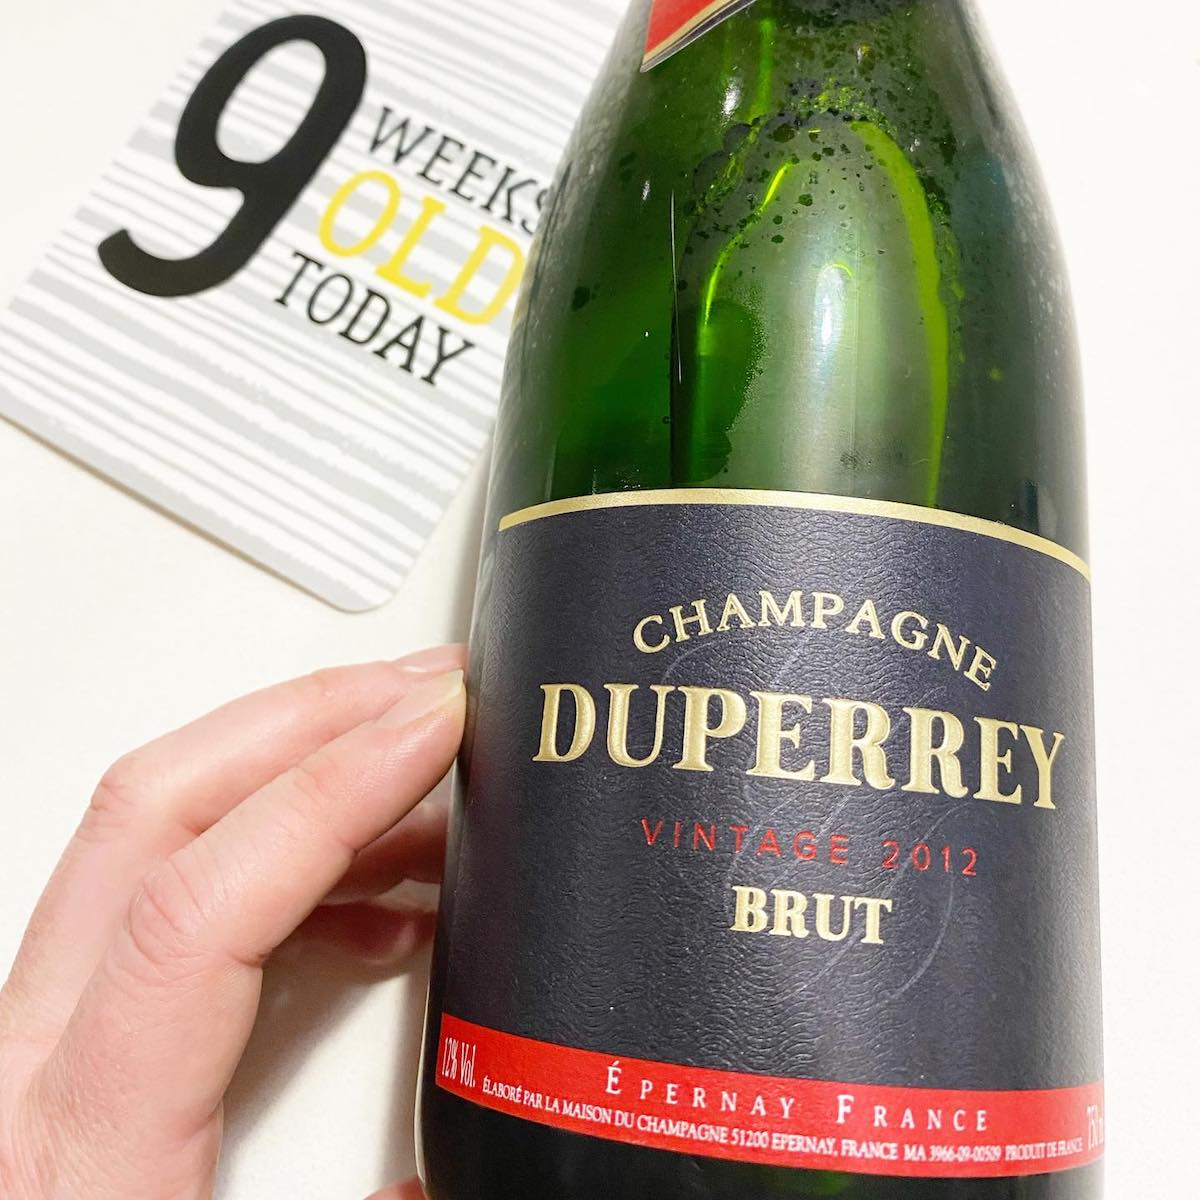 Champagne Duperrey Vintage 2012 Brut